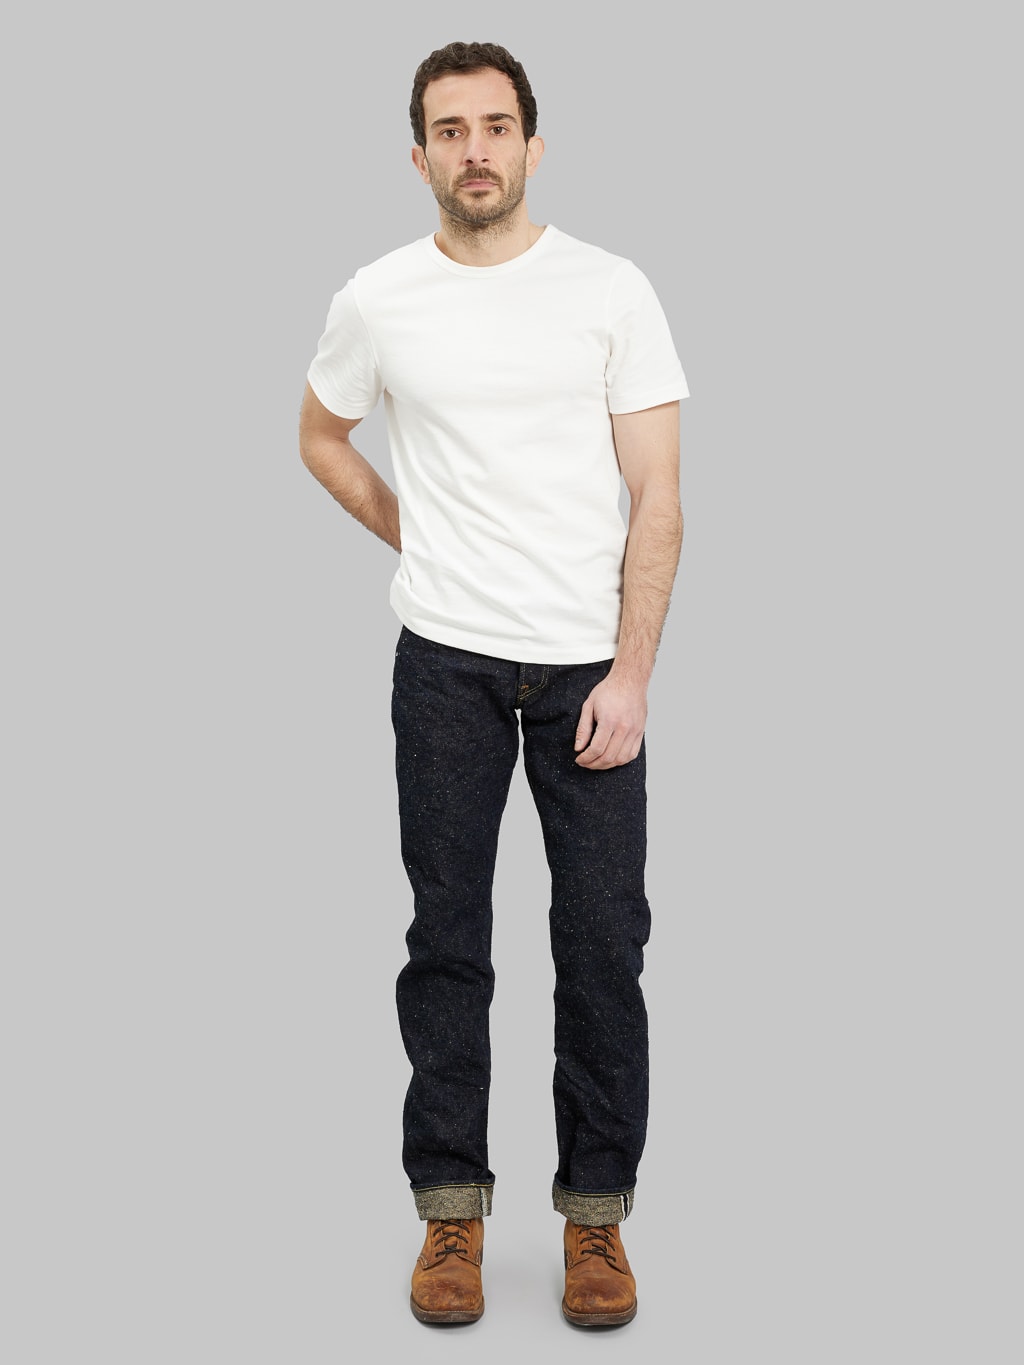 ONI Denim 288 Asphalt 20oz Regular Straight Jeans model front fit